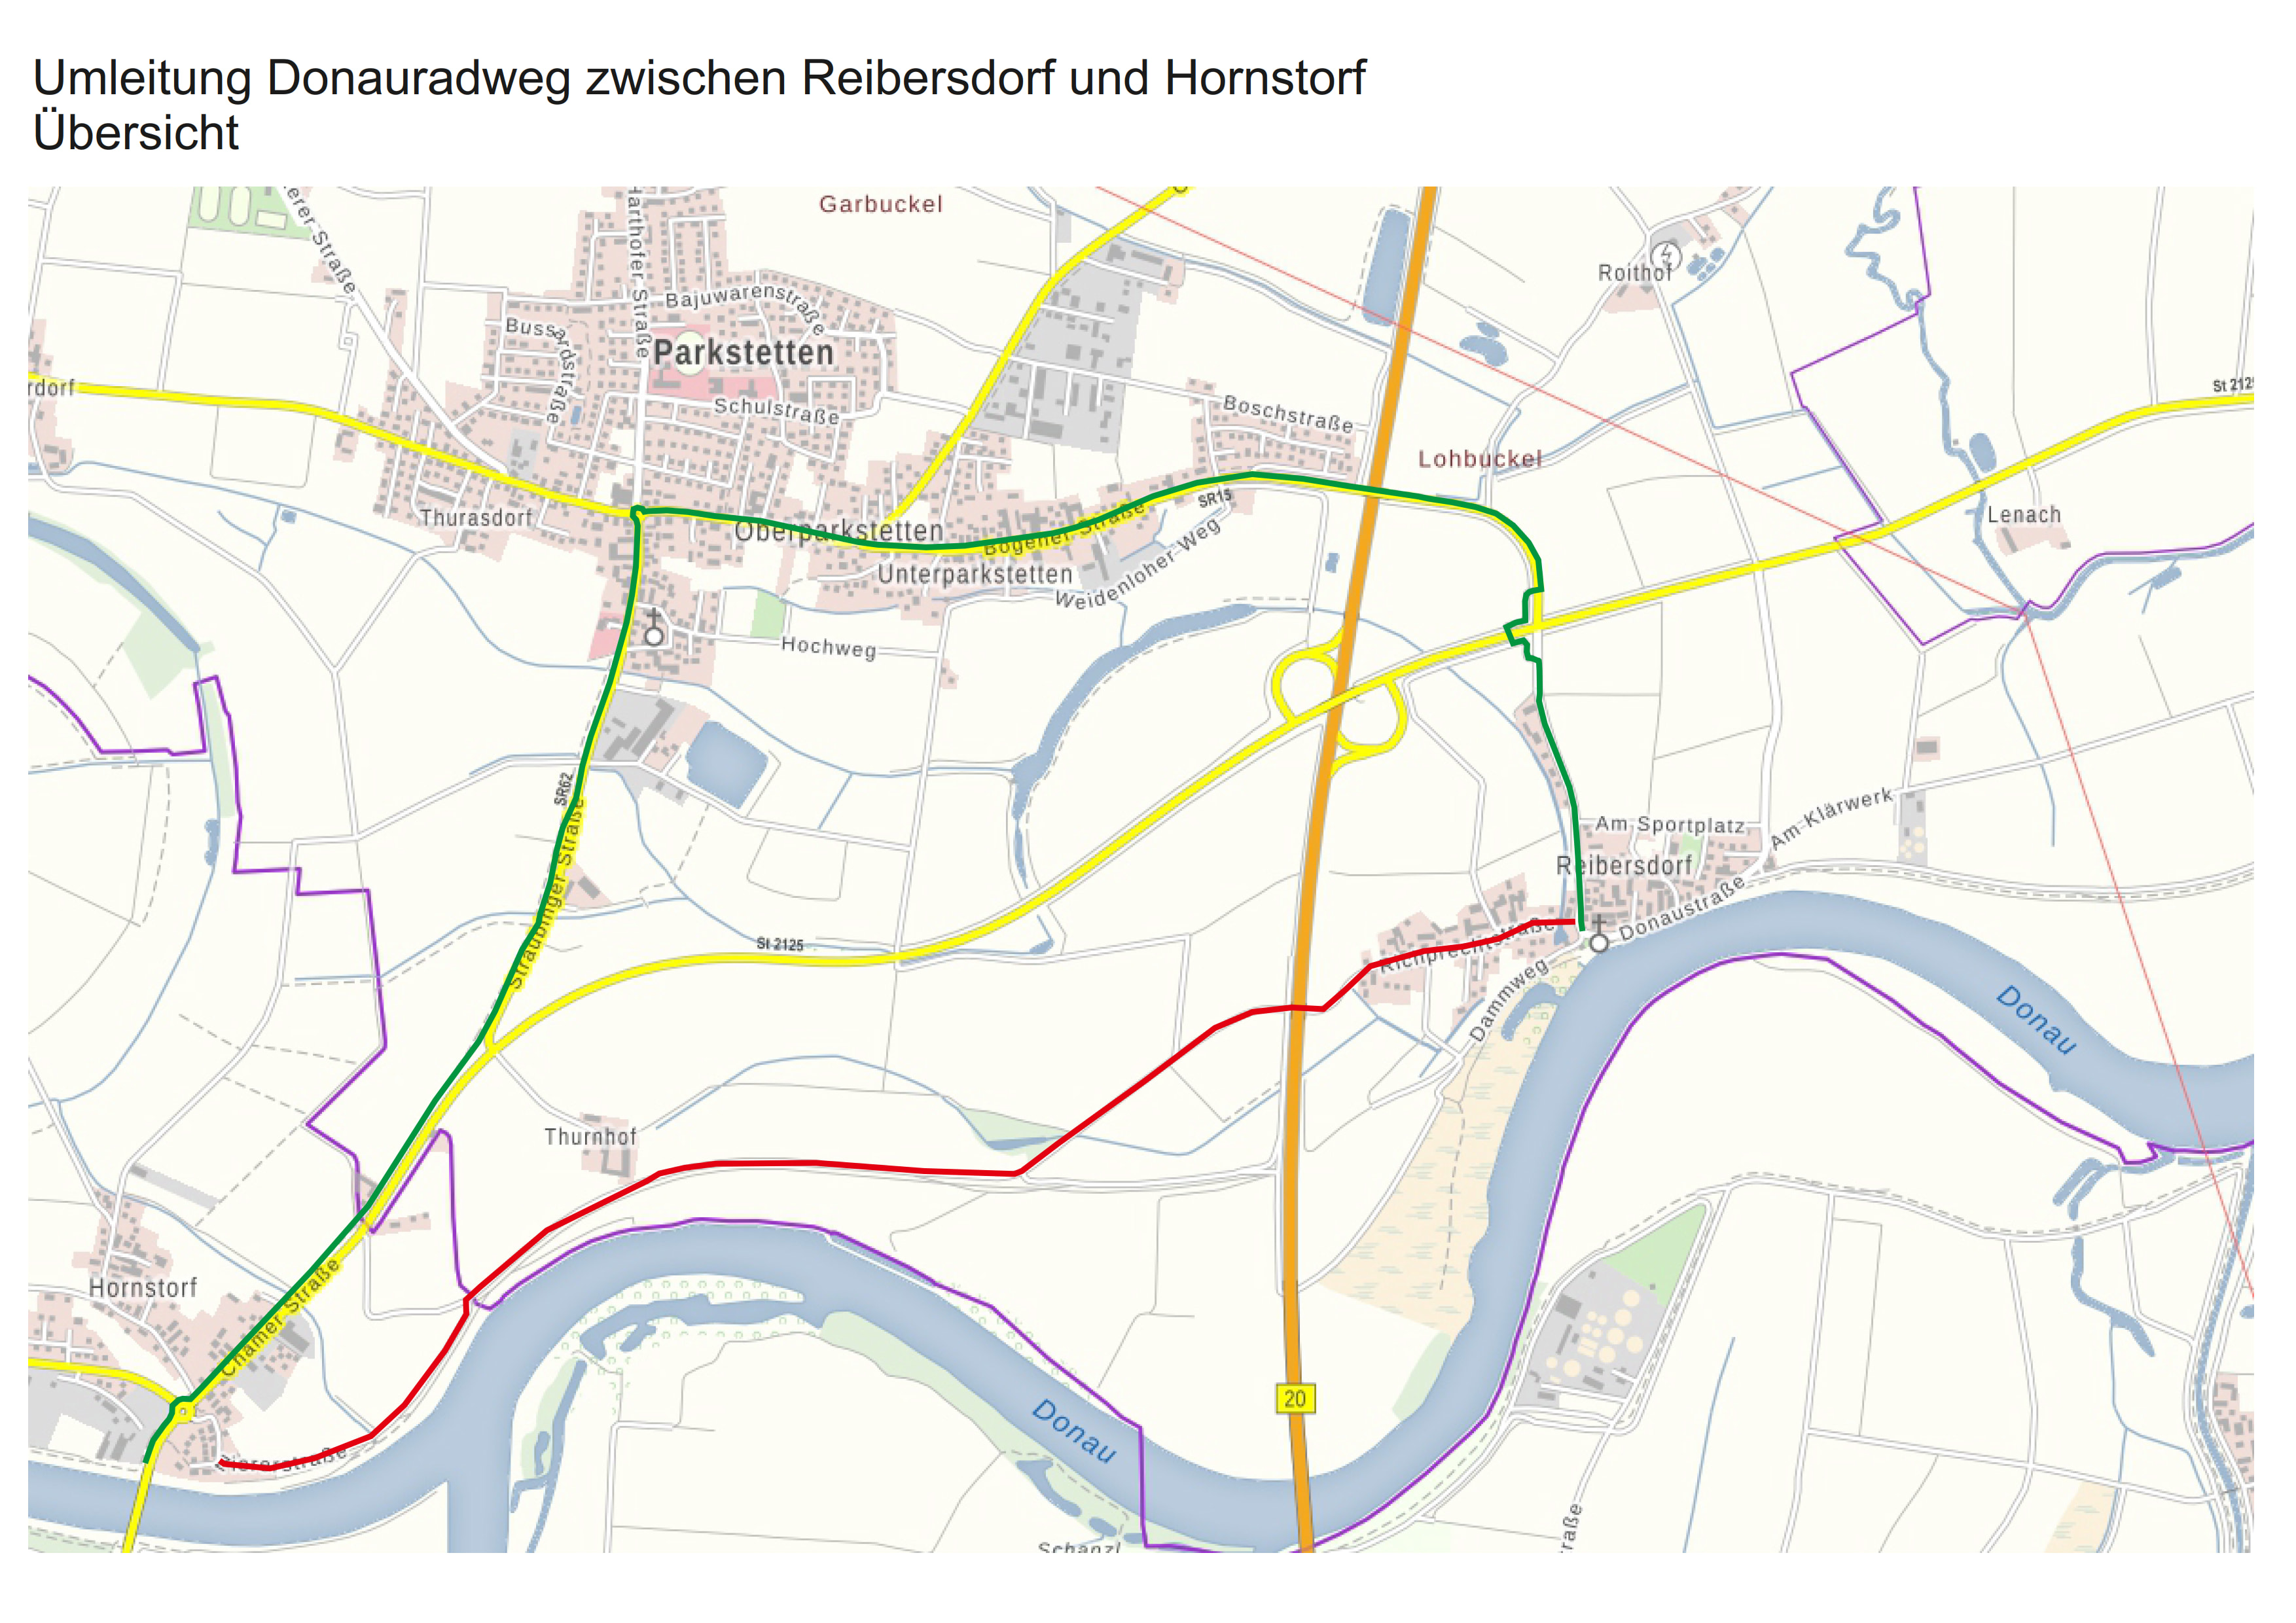 Donauradweg zwischen Reibersdorf und Hornstorf weiterhin gesperrt 